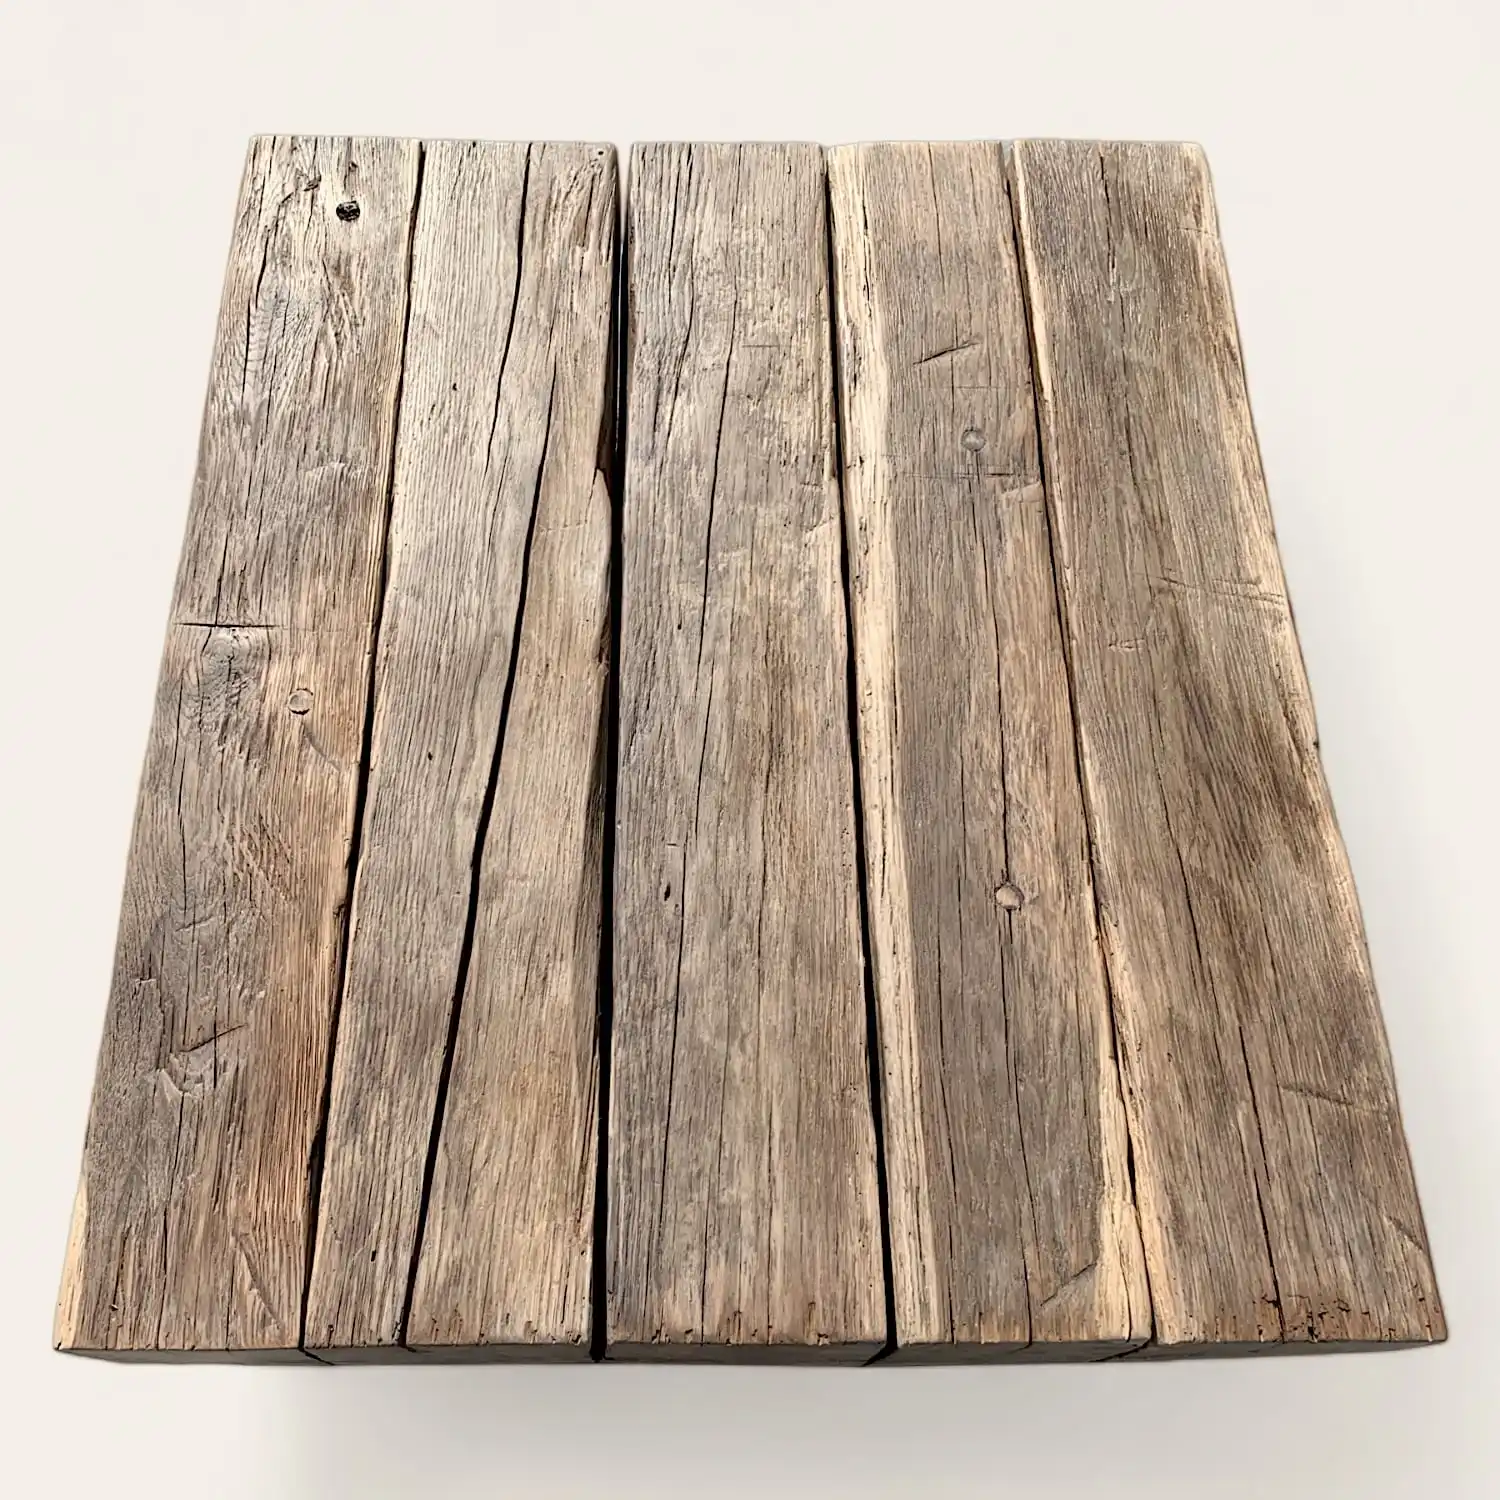  Une vieille planche de bois sur une surface blanche. 